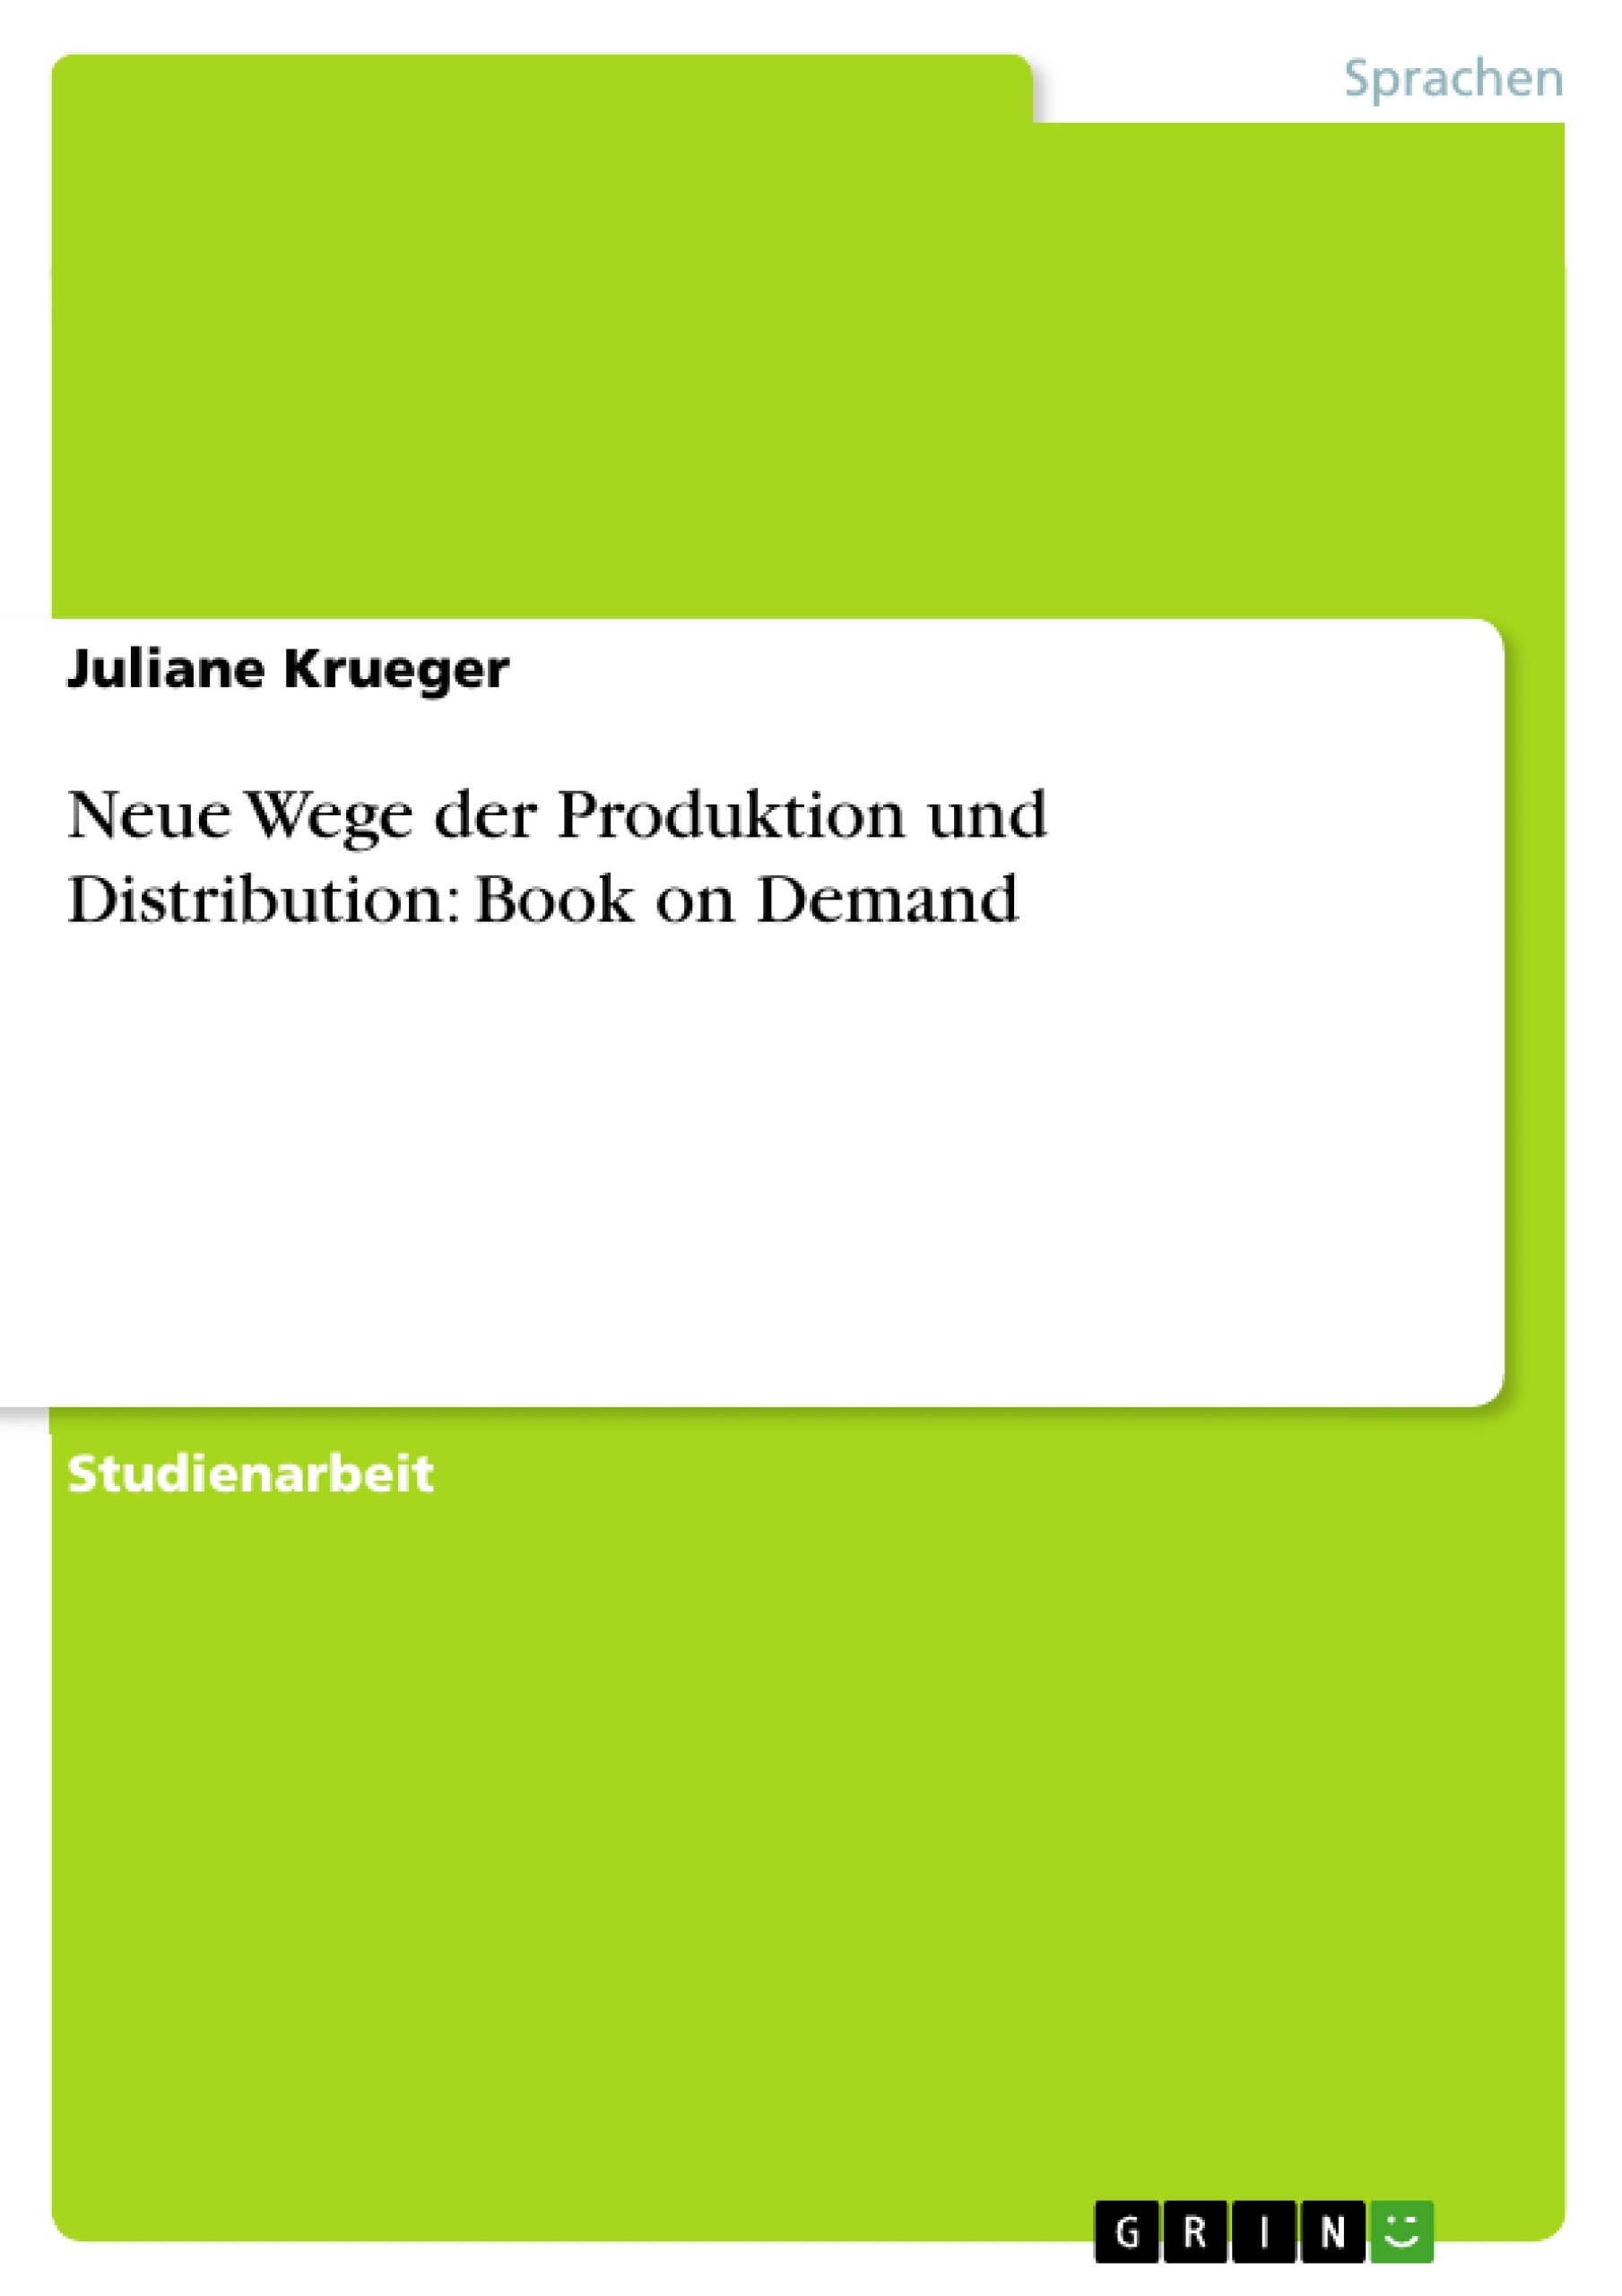 Title: Neue Wege der Produktion und Distribution: Book on Demand